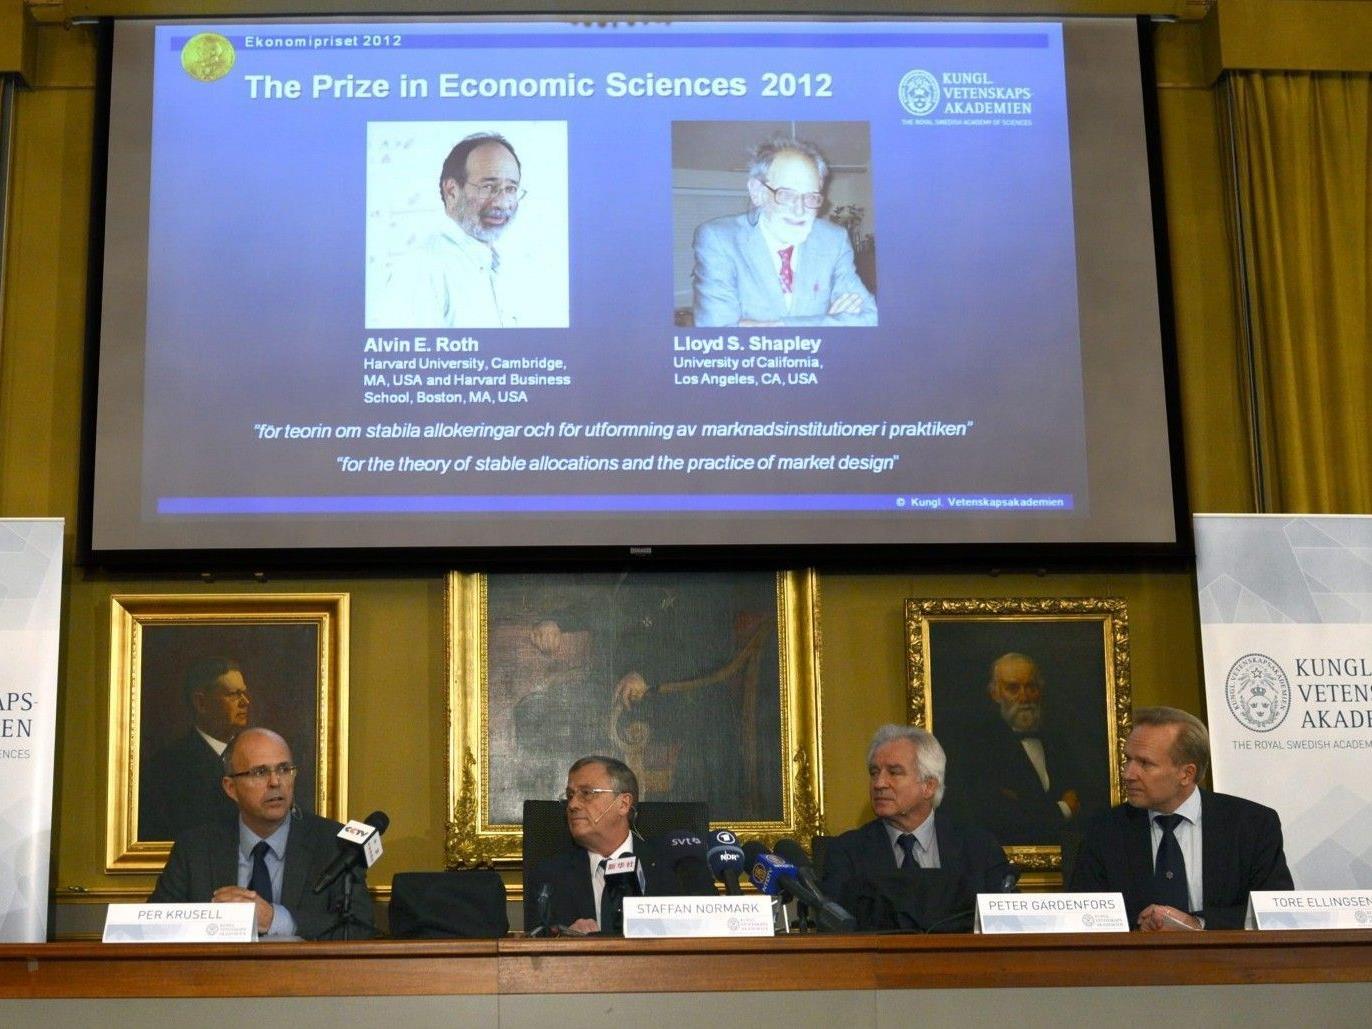 Pressekonferenz zur Verleihung des Wirtschaftsnobelpreises 2012.